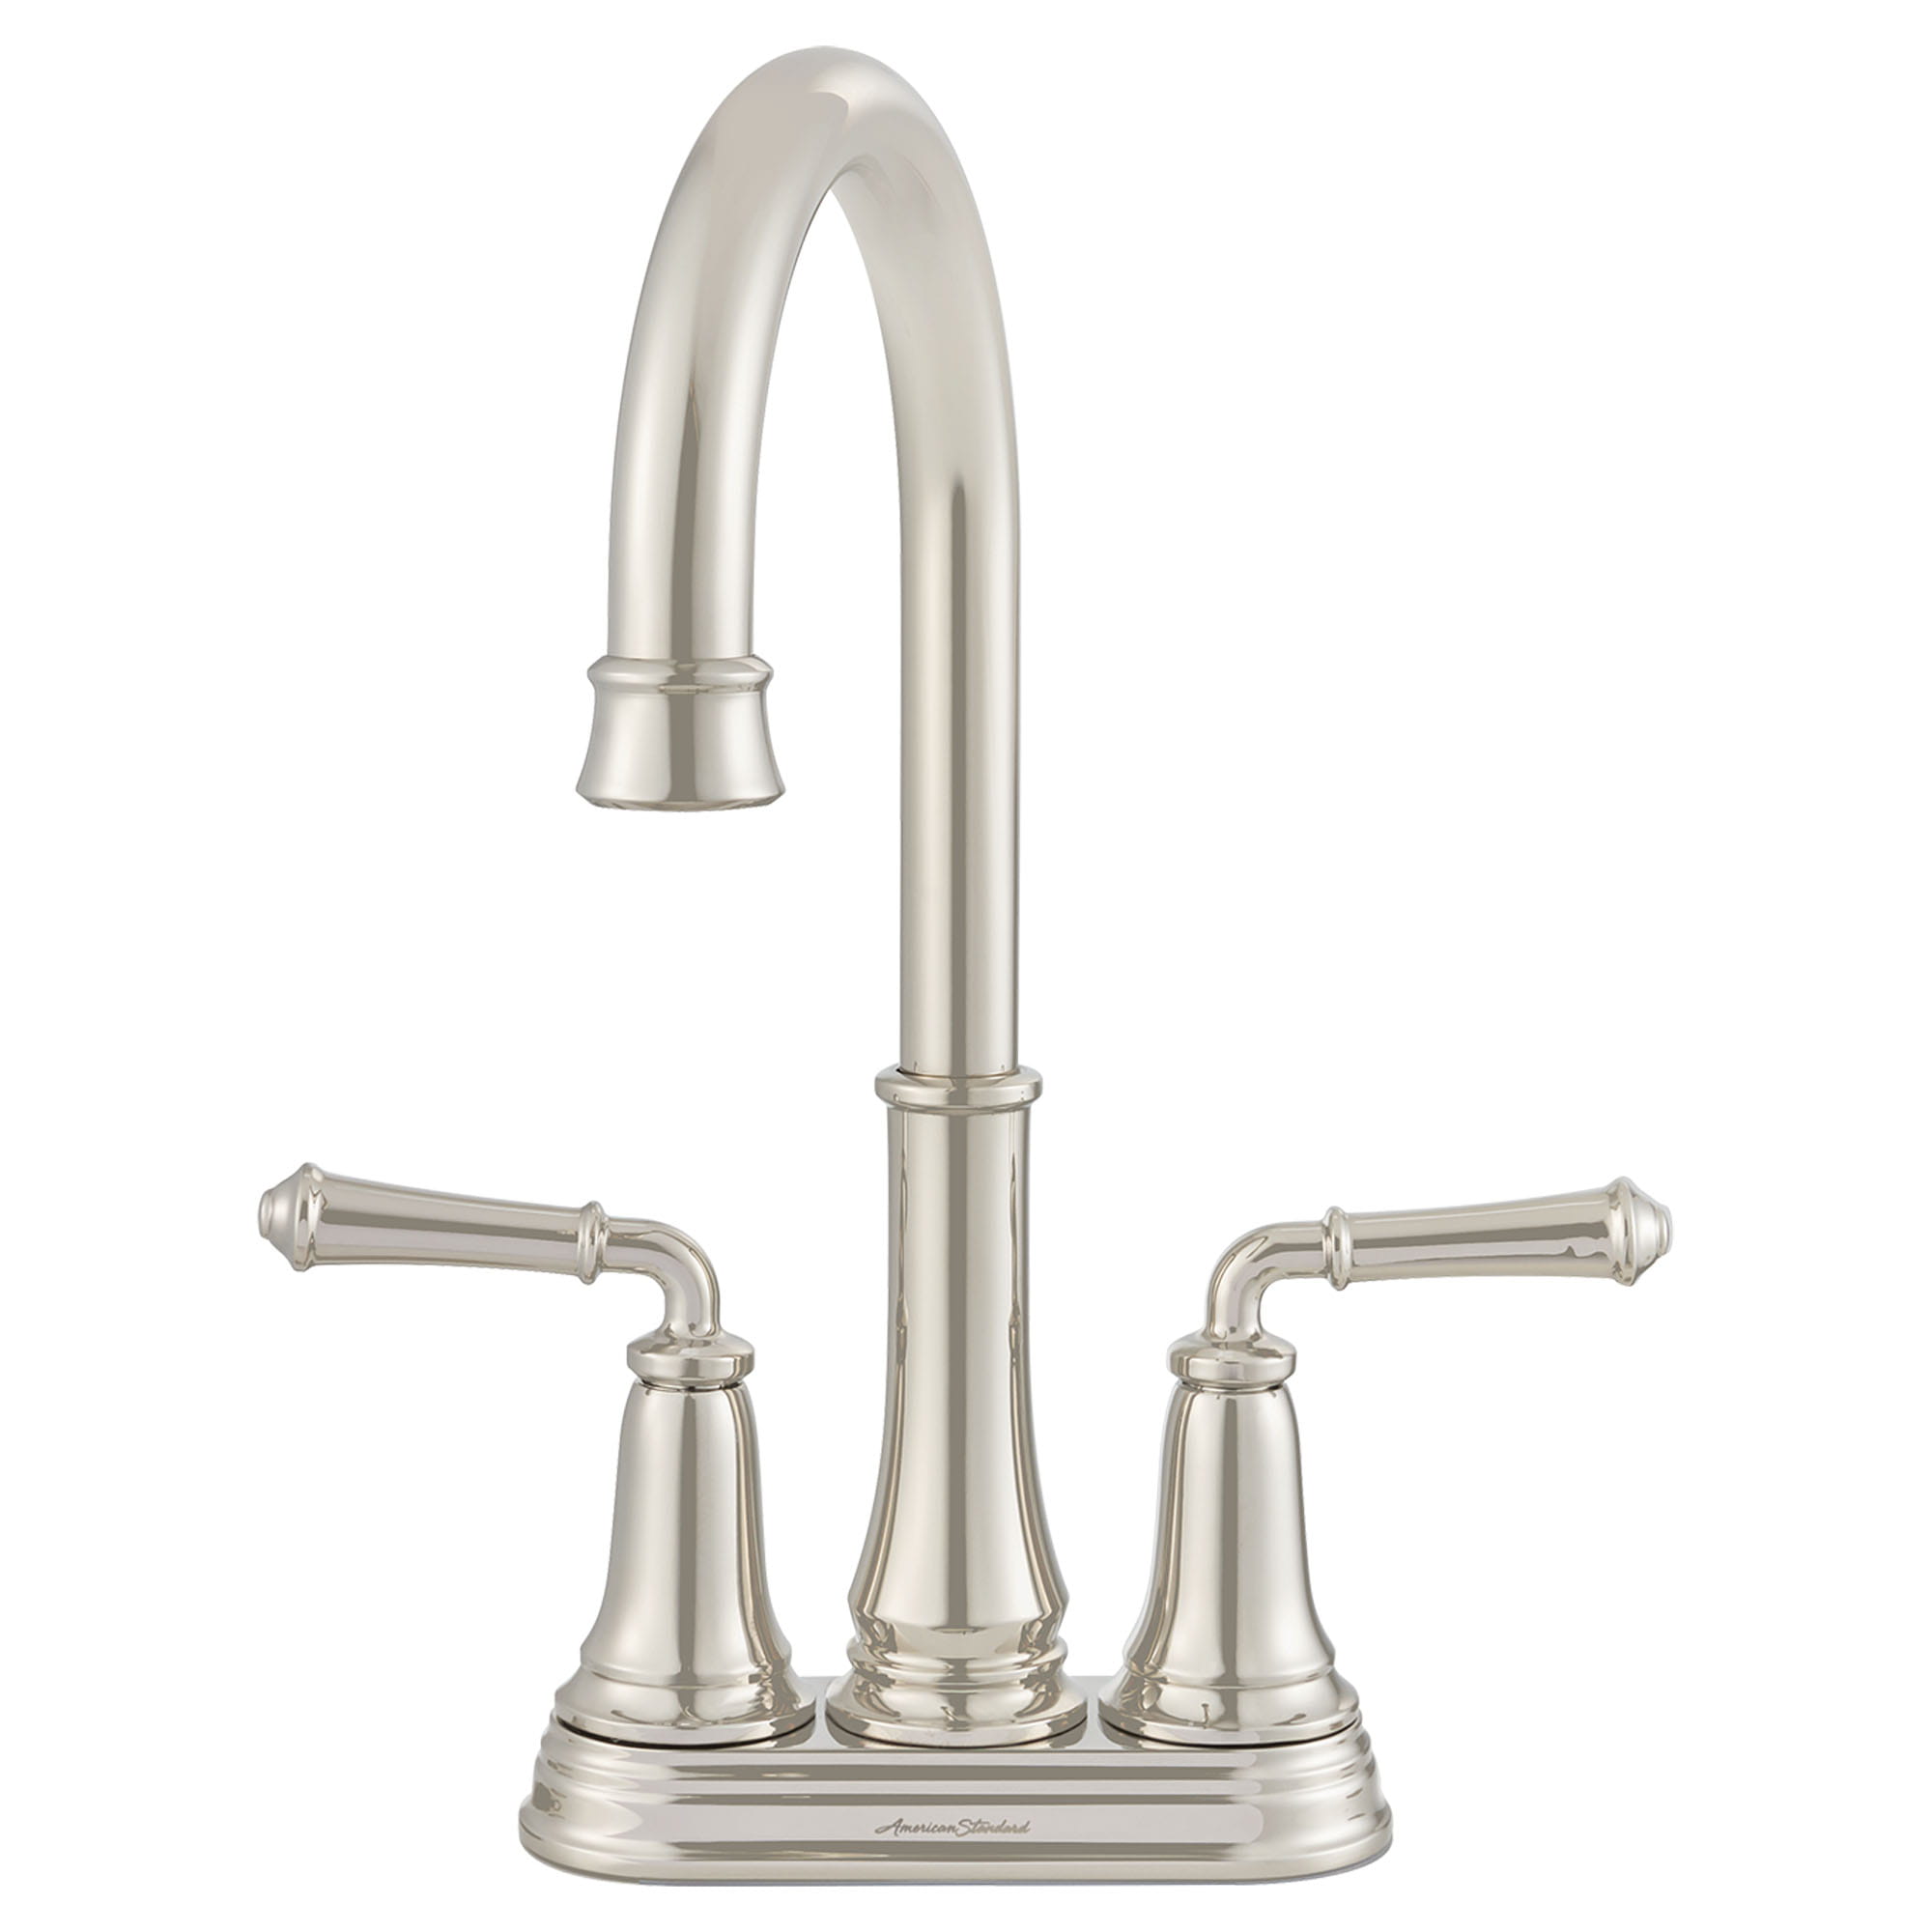 Delancey® 2-Handle Bar Faucet 1.5 gpm/5.7 L/min